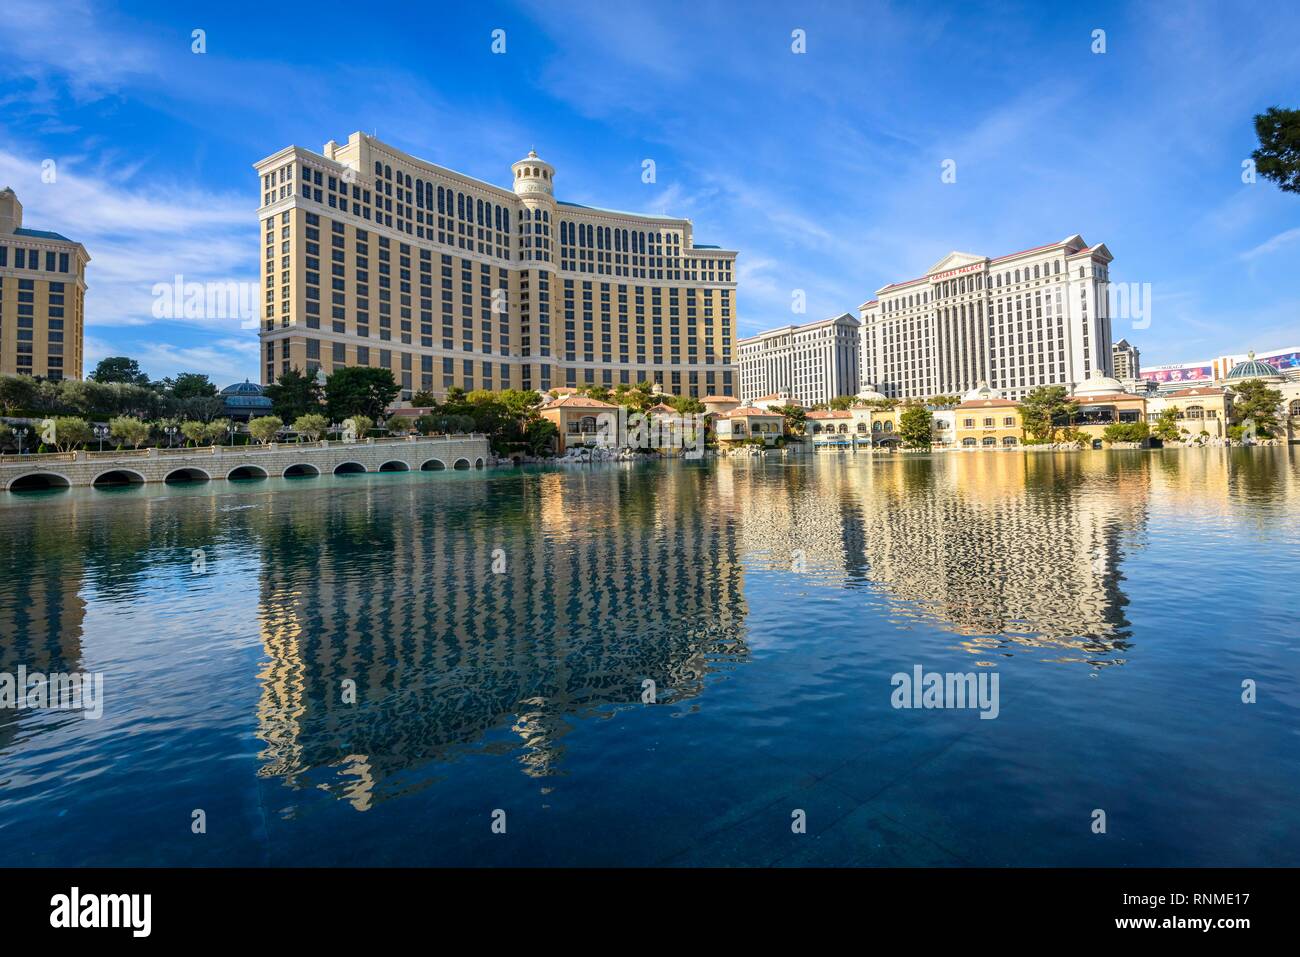 Il lago di fronte all'Hotel Bellagio, casinò, Hotel di lusso a Las Vegas Strip di Las Vegas, Nevada, STATI UNITI D'AMERICA Foto Stock